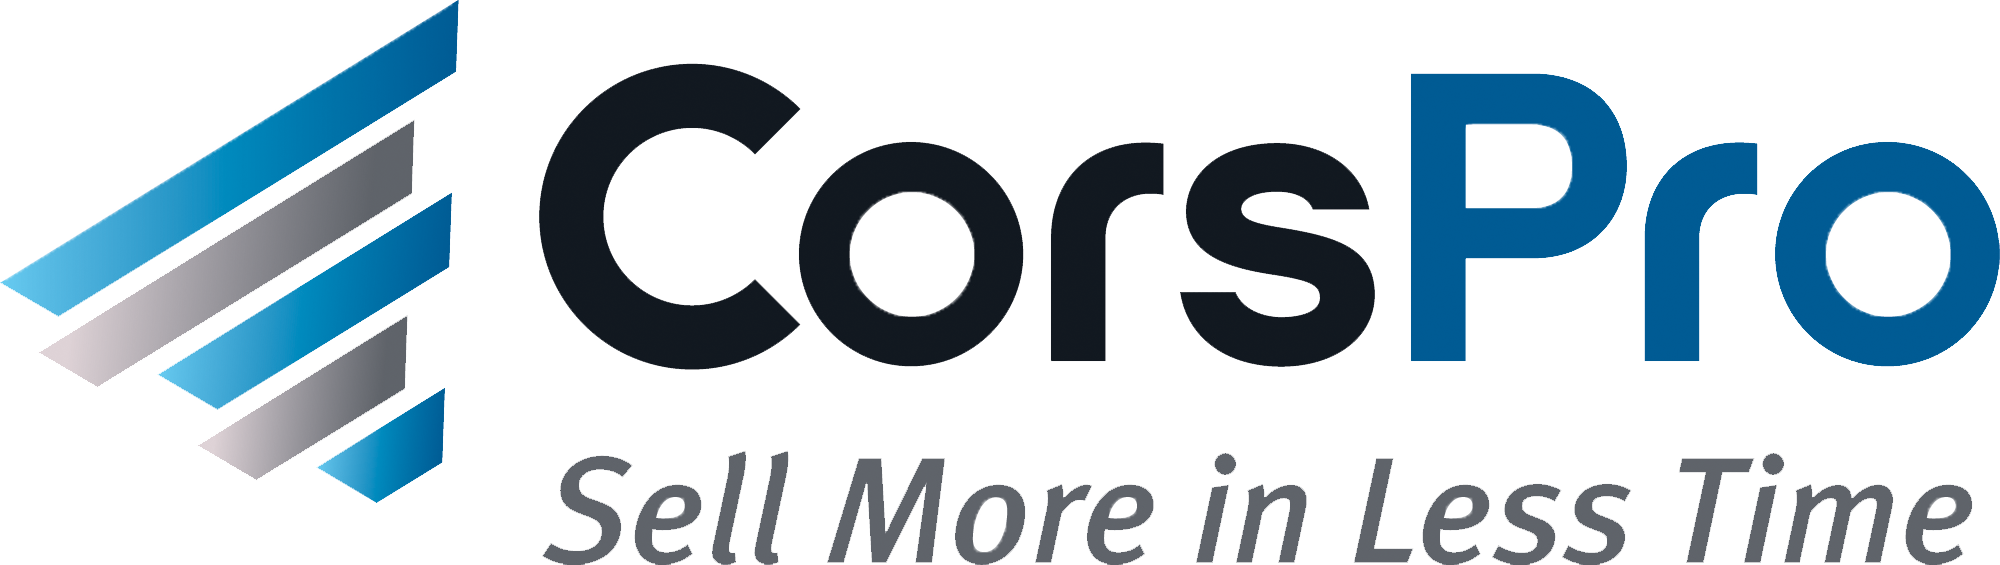 CorsPro - Logo transparent-2.png